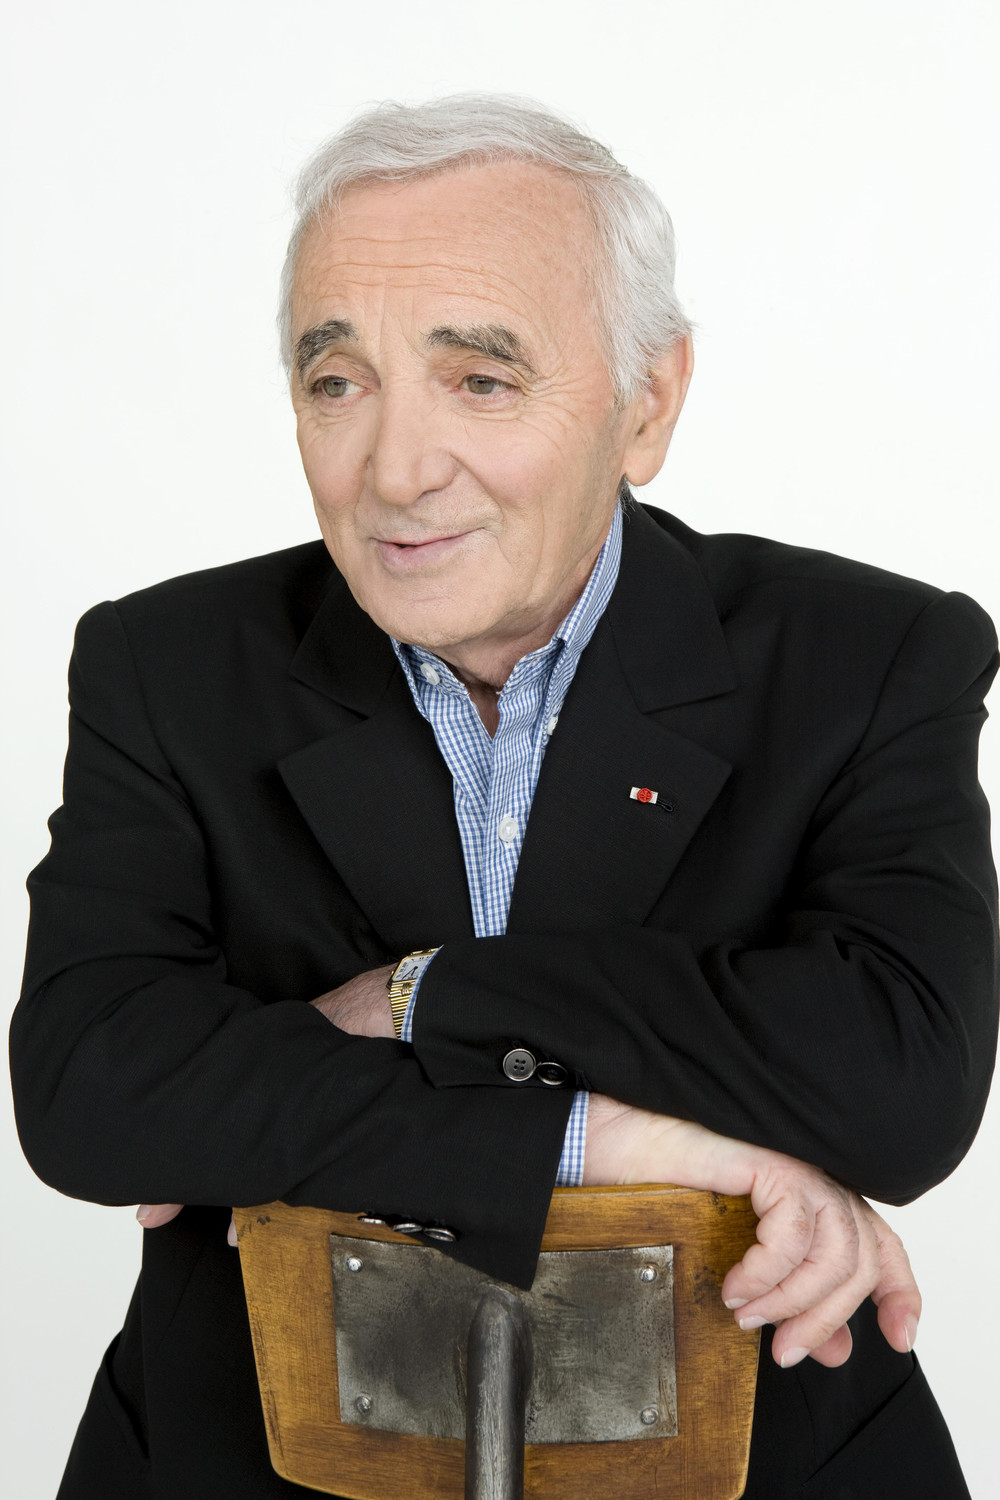 Charles+Aznavour